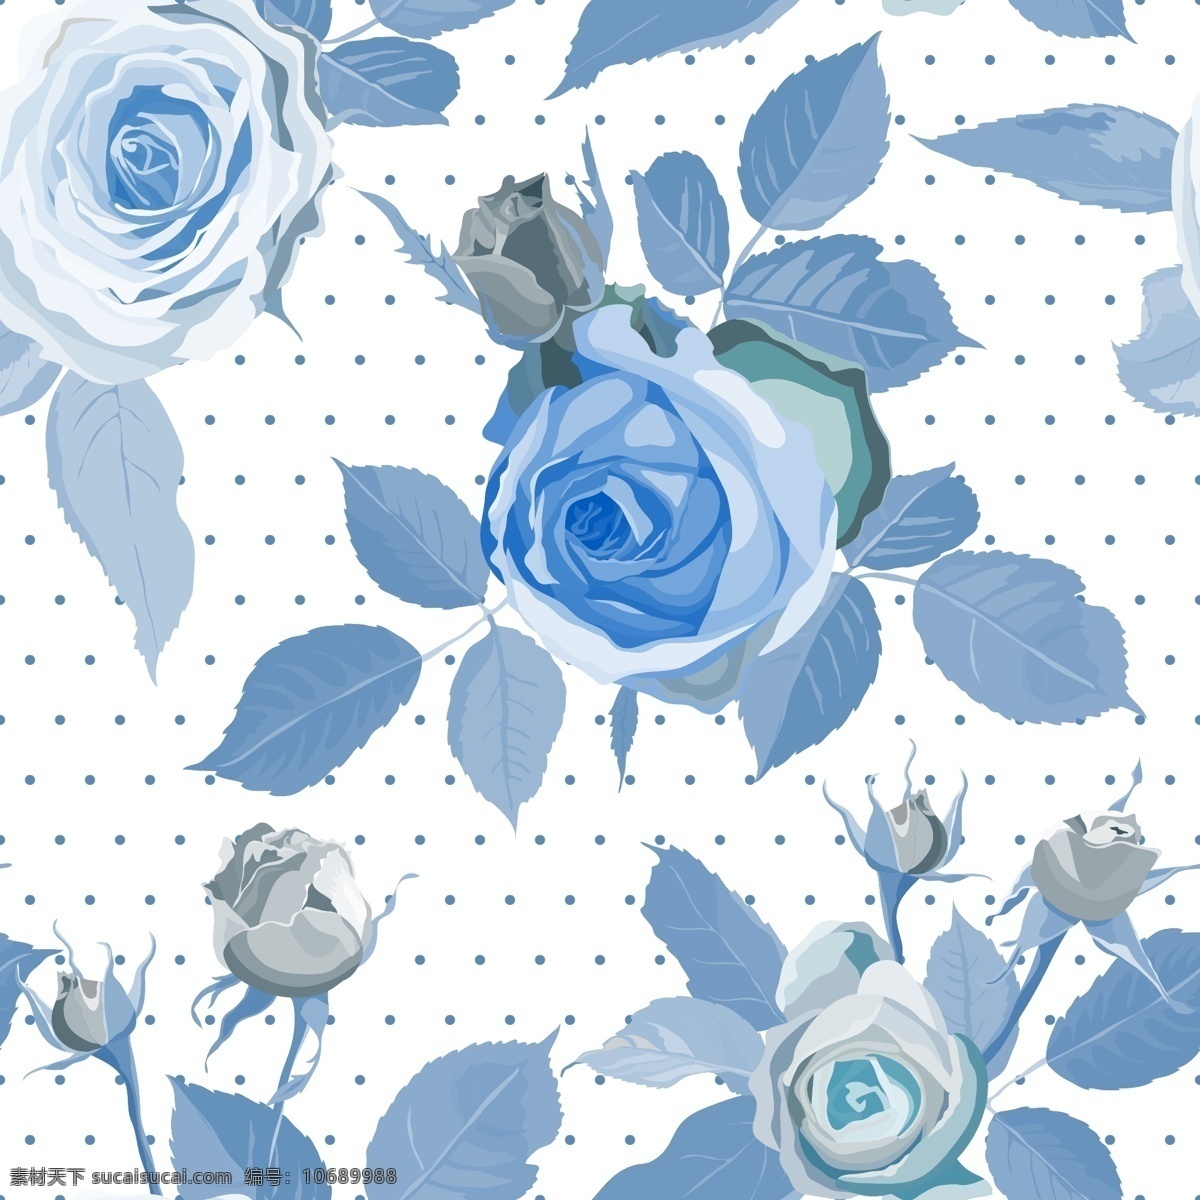 蓝色 玫瑰花 无缝 背景 矢量 水玉点 蓝玫瑰 无缝背景 矢量图